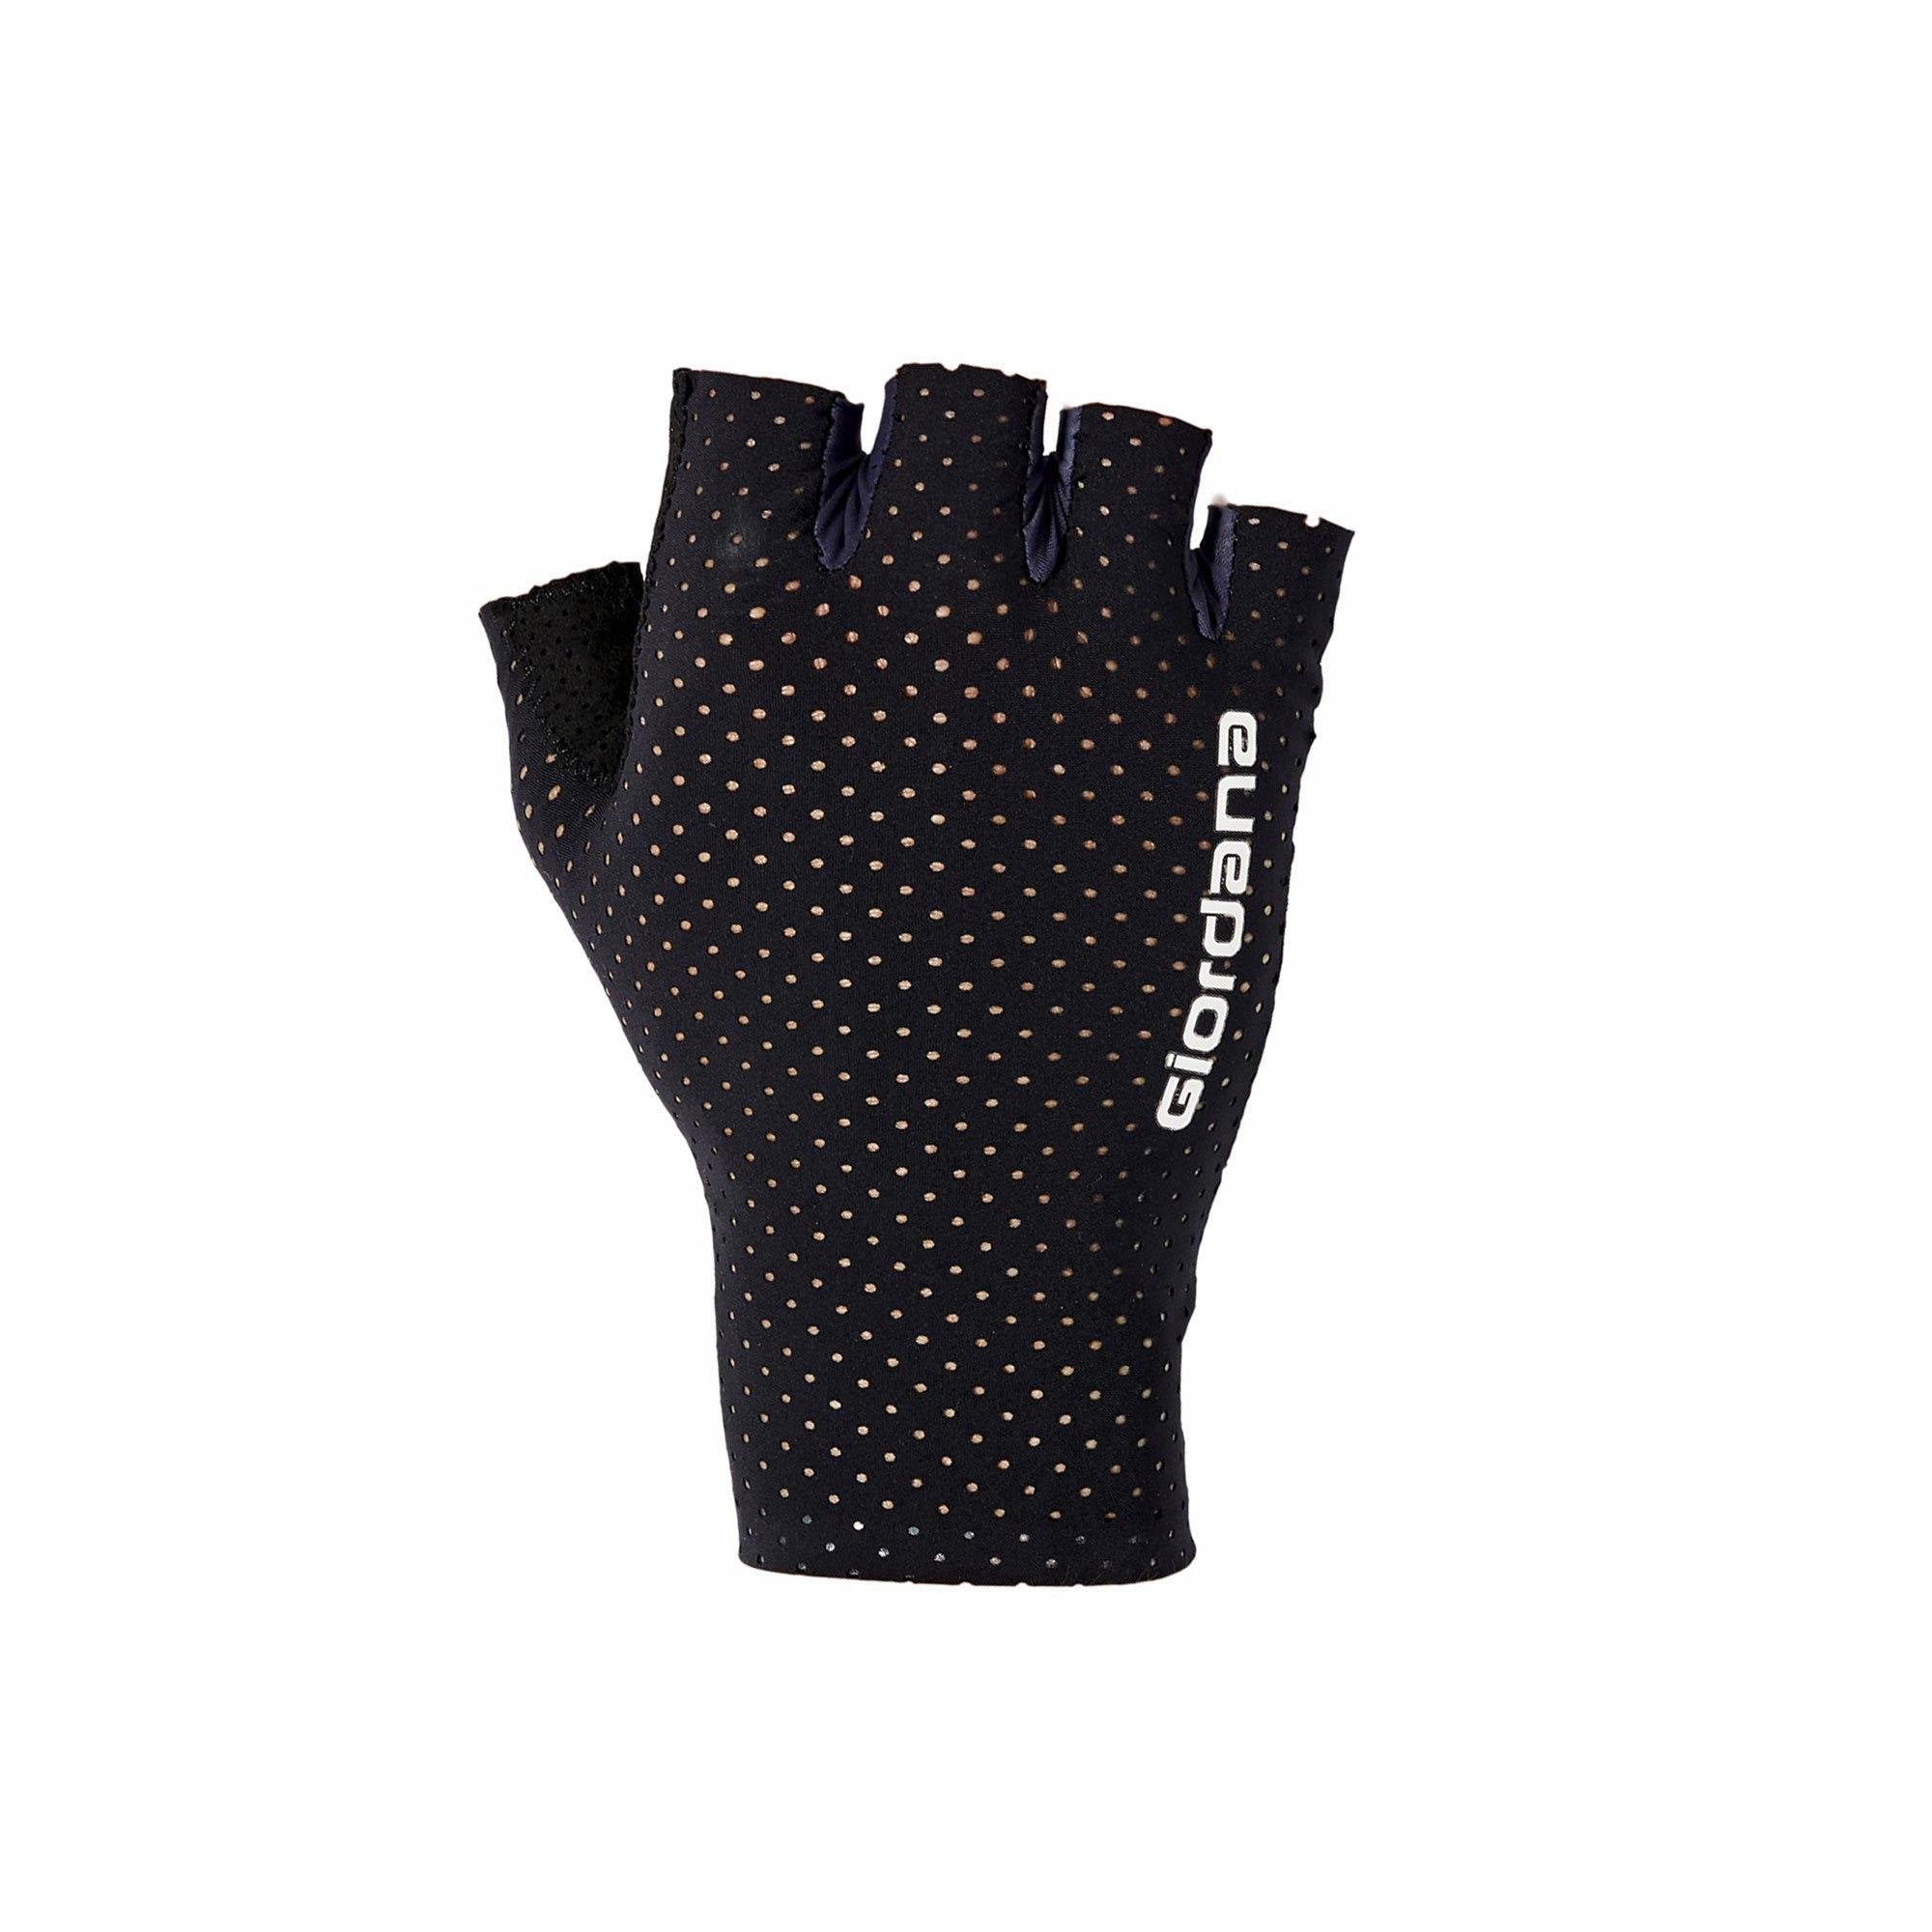 FR-C Pro Aero Lyte Gloves